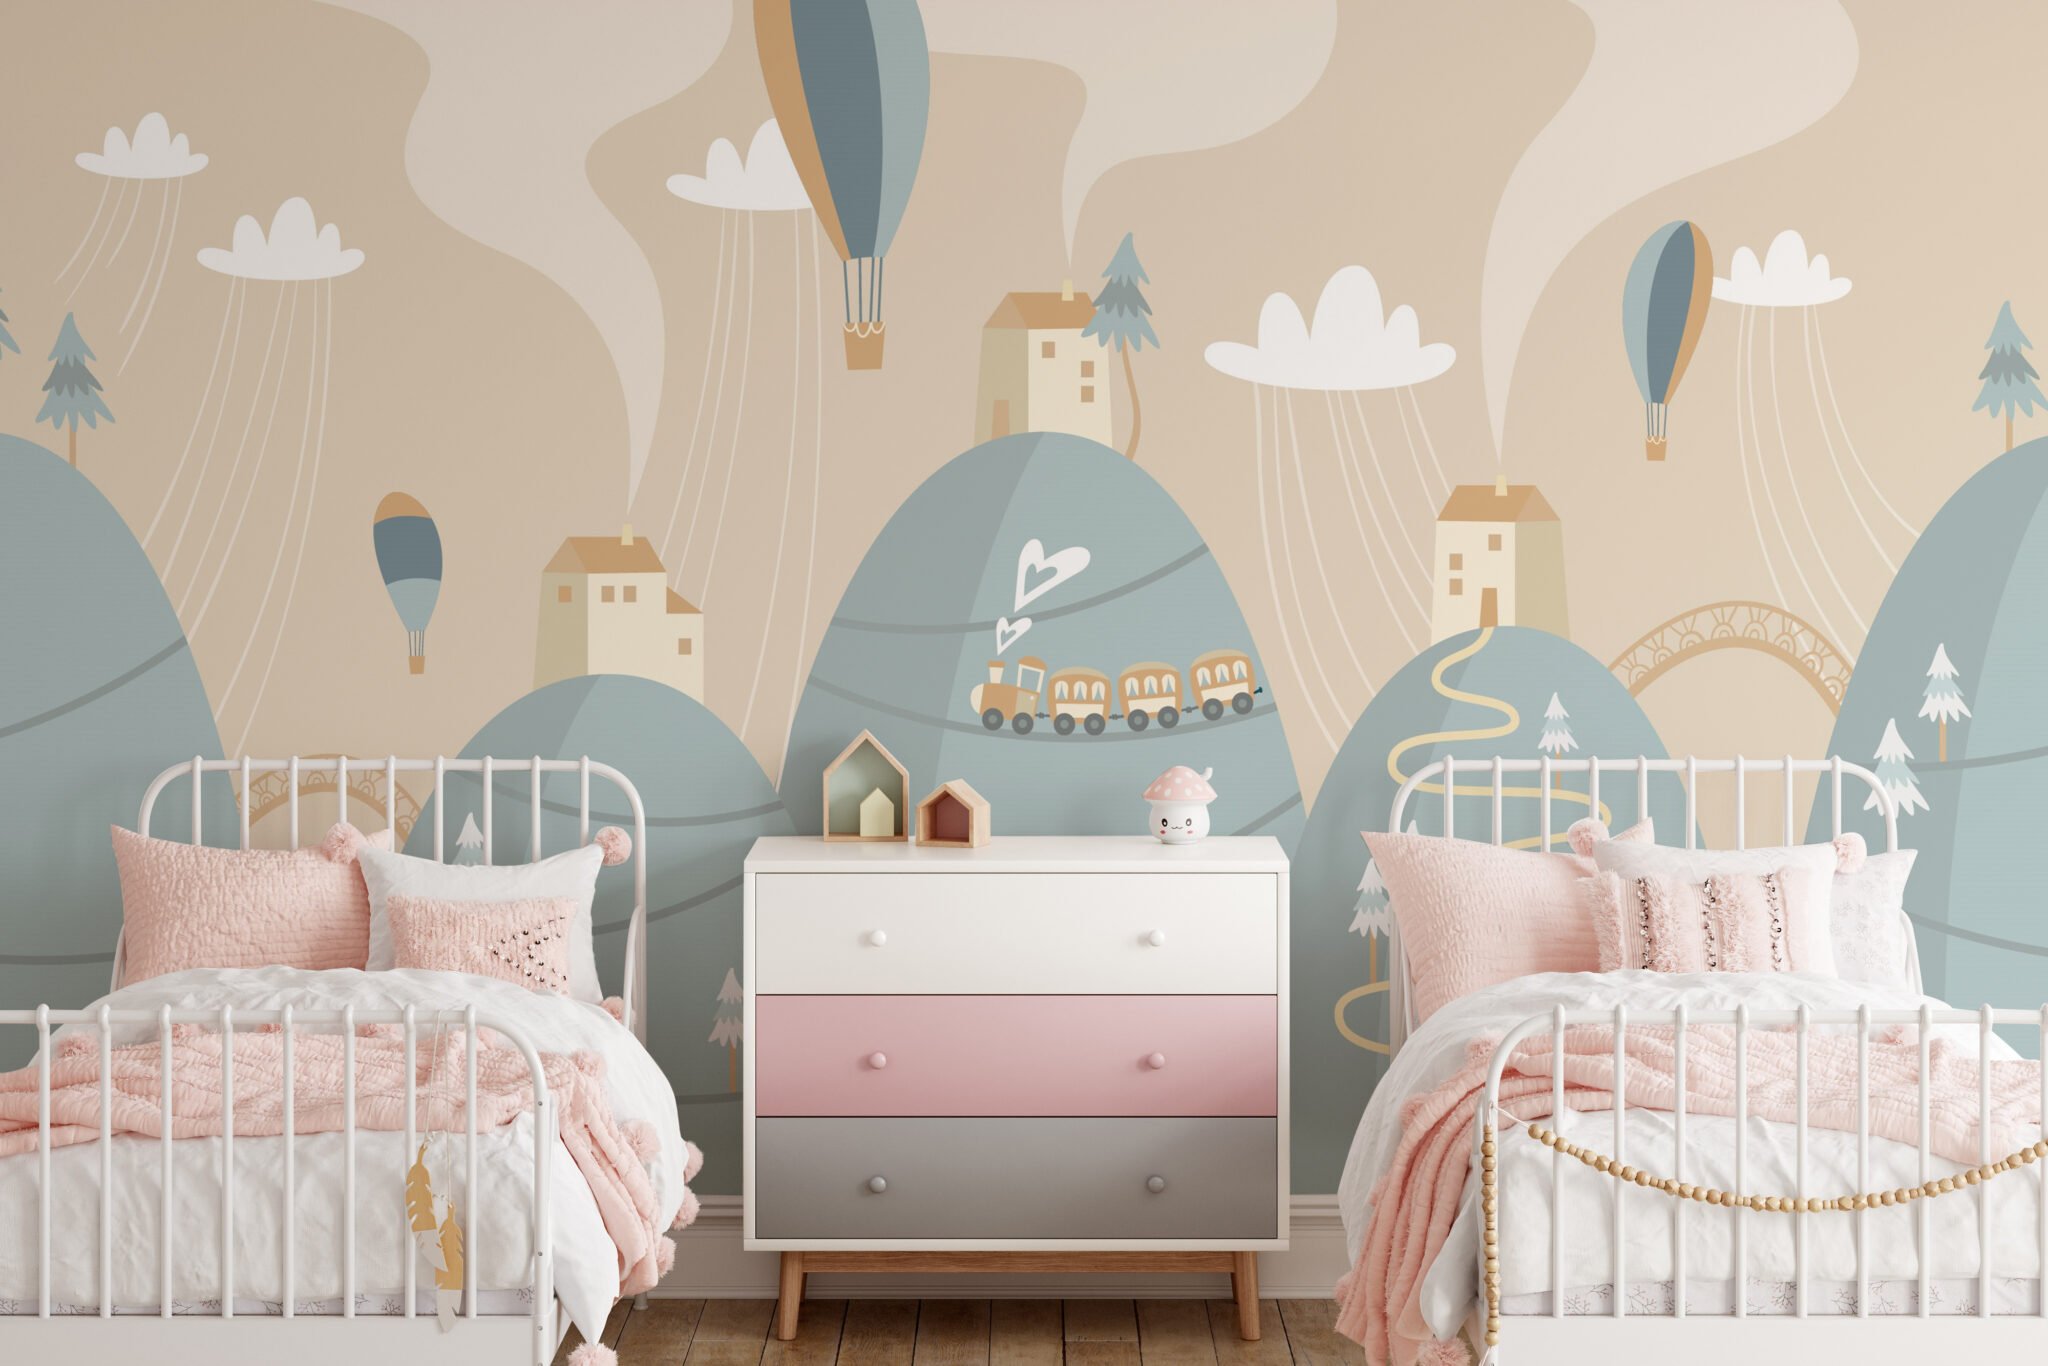 Buy Kids World Map Wallpaper Mural for All Children Room Decor